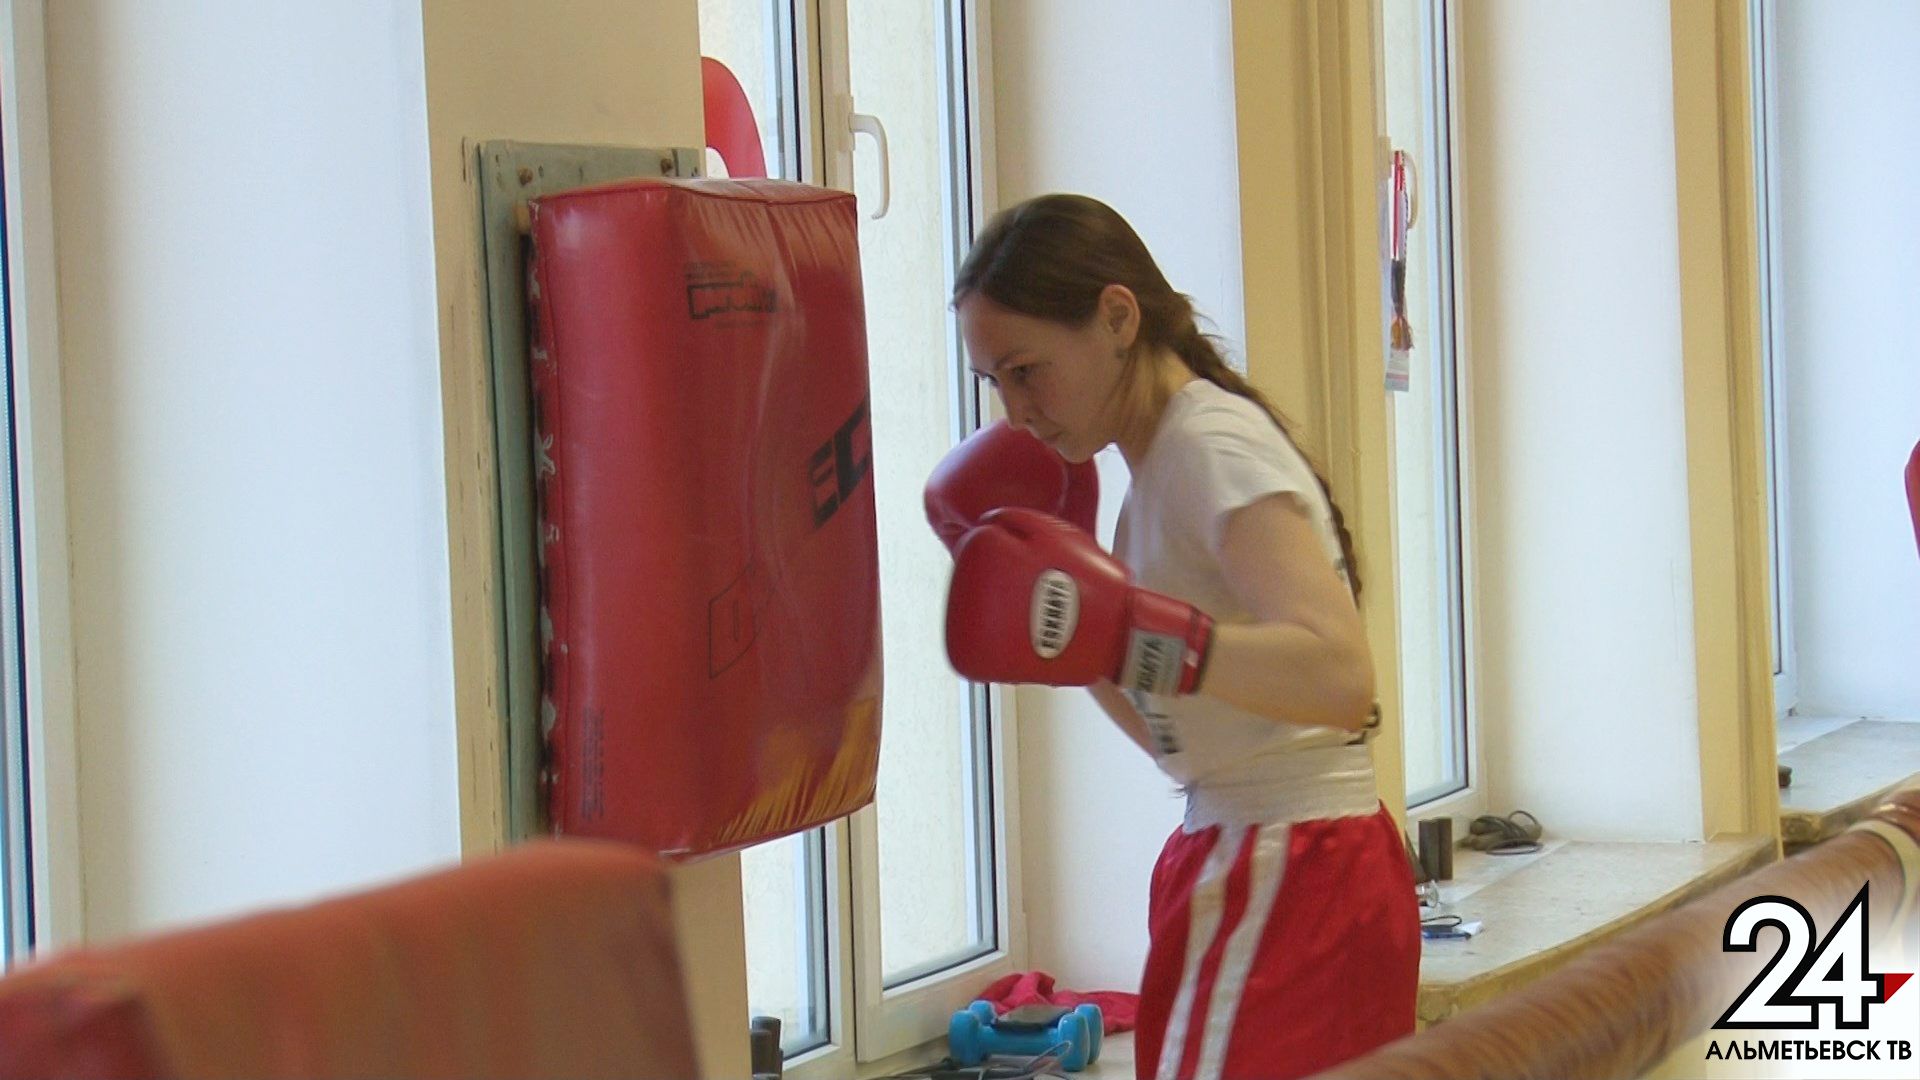 Боксерские перчатки маникюру не мешают: спортсменка из Альметьевска уверена, что бокс подчеркивает женственность